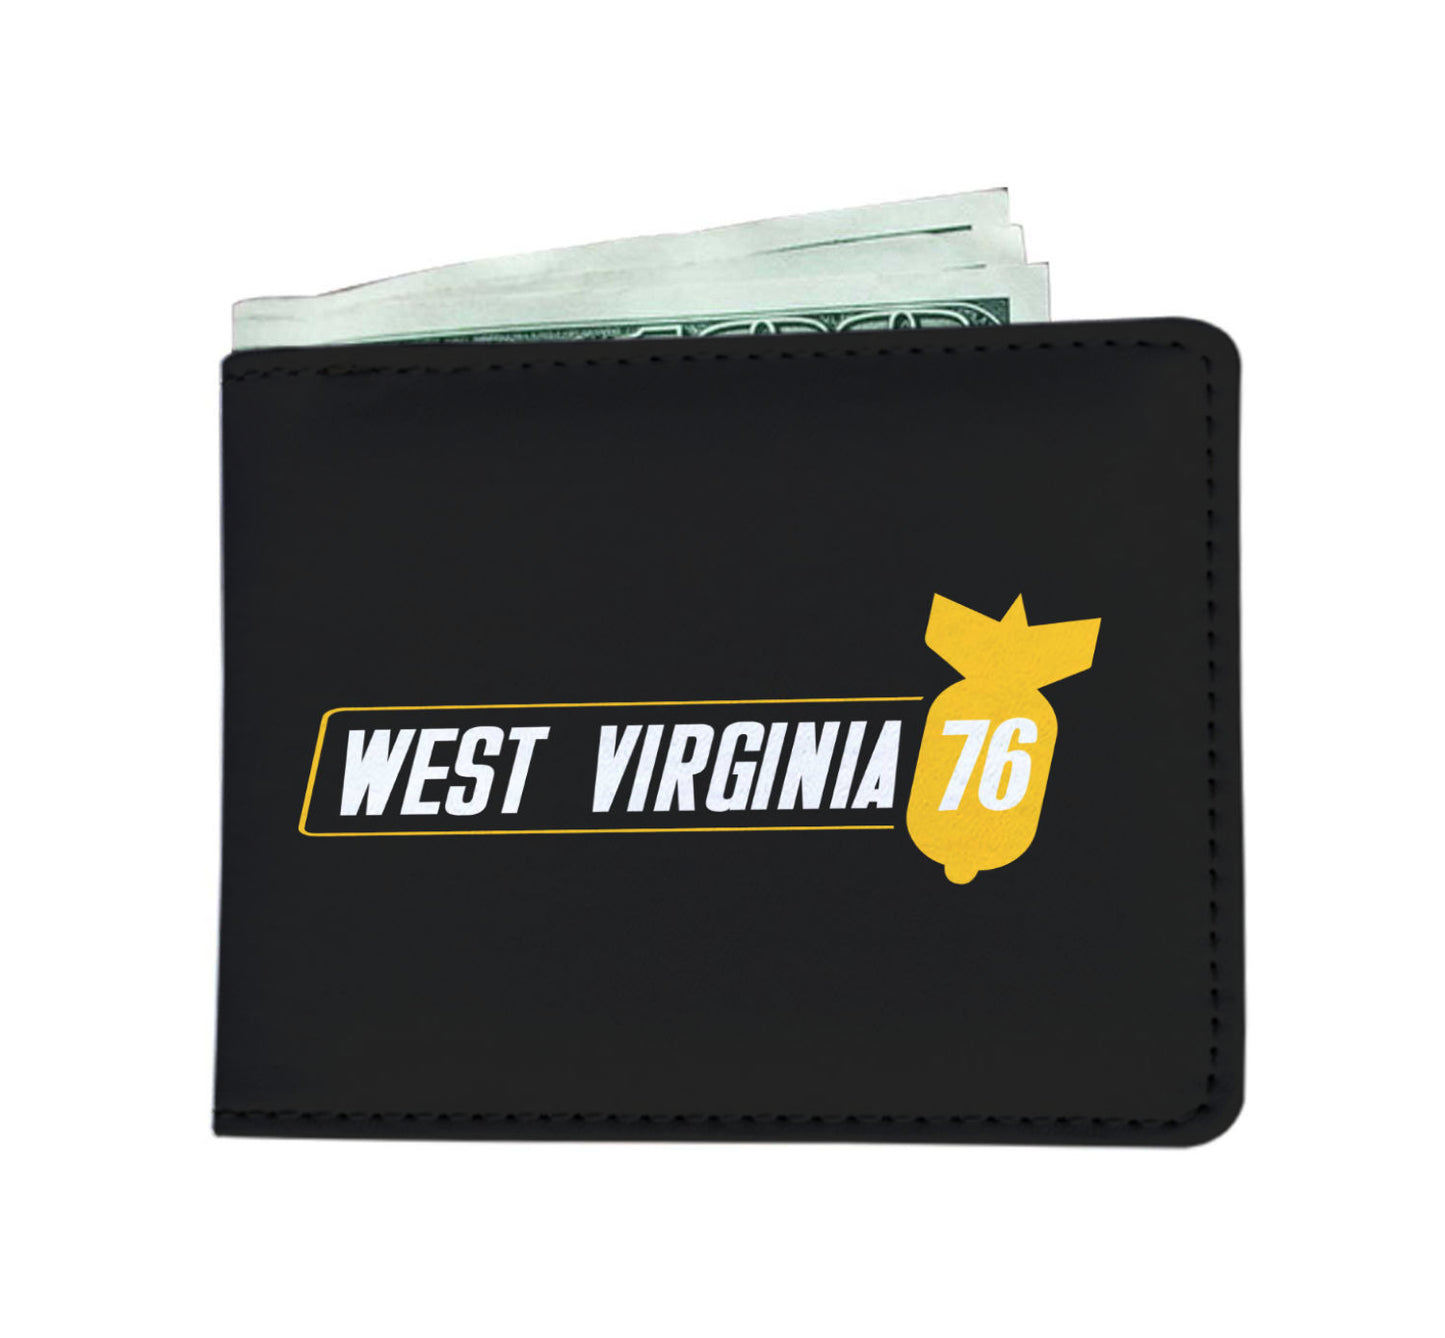 West Virginia 76 RPG Video Game Mens Wallet